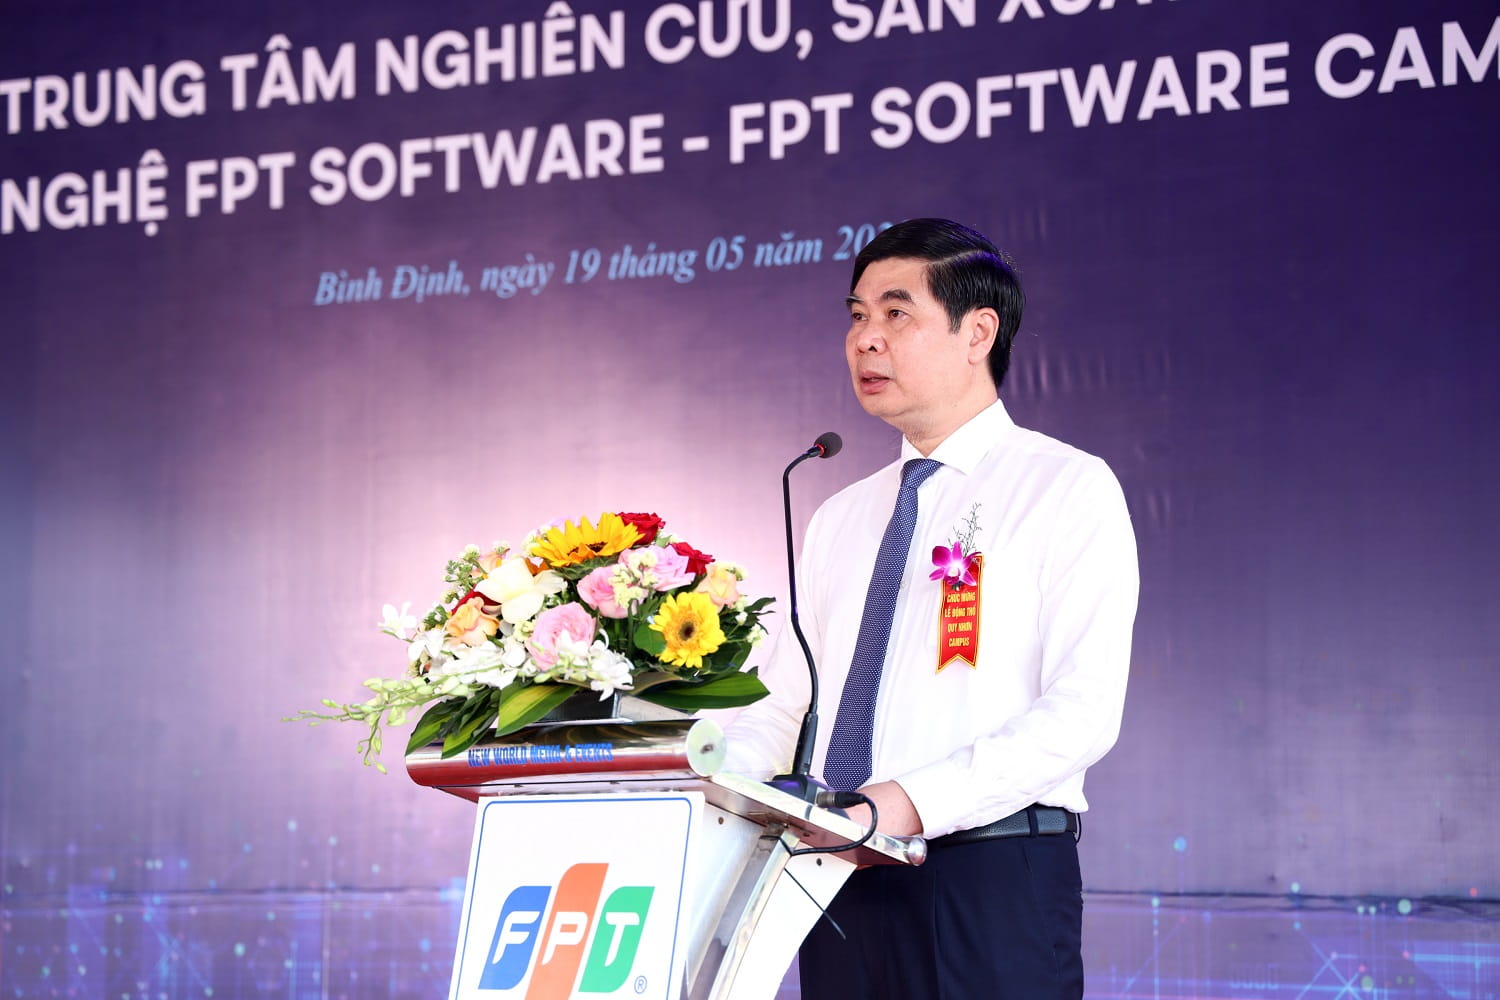 Ông Lâm Hải Giang, Tỉnh Ủy viên, Phó Chủ tịch UBND tỉnh chia sẻ tại sự kiện